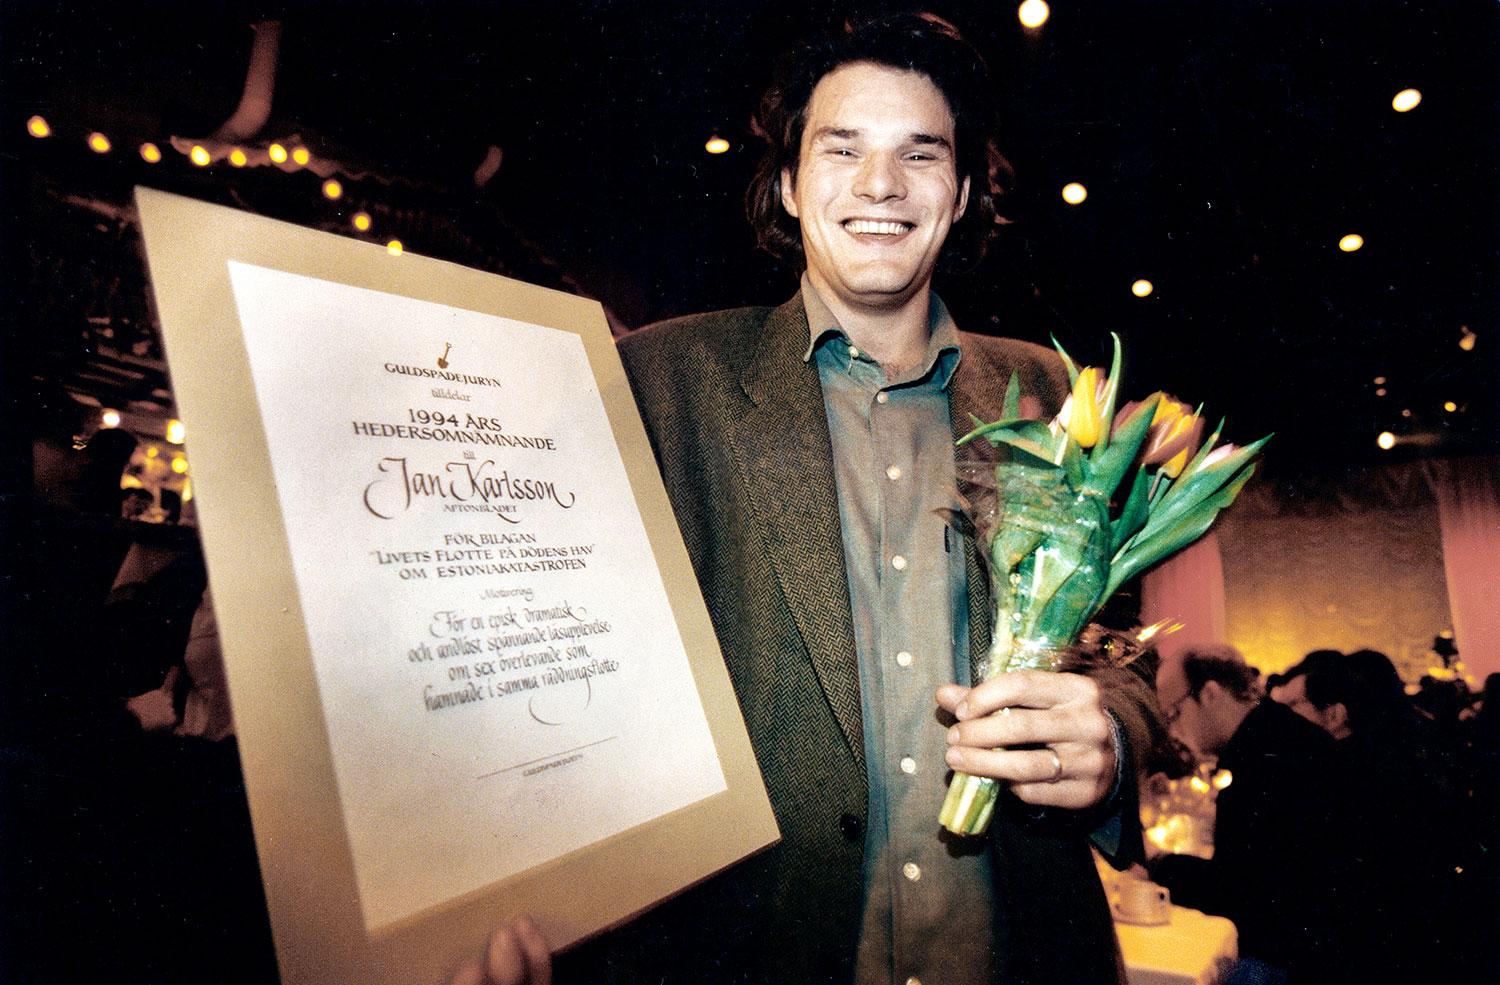 Jan Helin (tidigare Karlsson) fick ett hedersomnämnade av Guldspadejuryn 1994 för "Livets flotte på dödens hav" om Estoniakatastrofen.